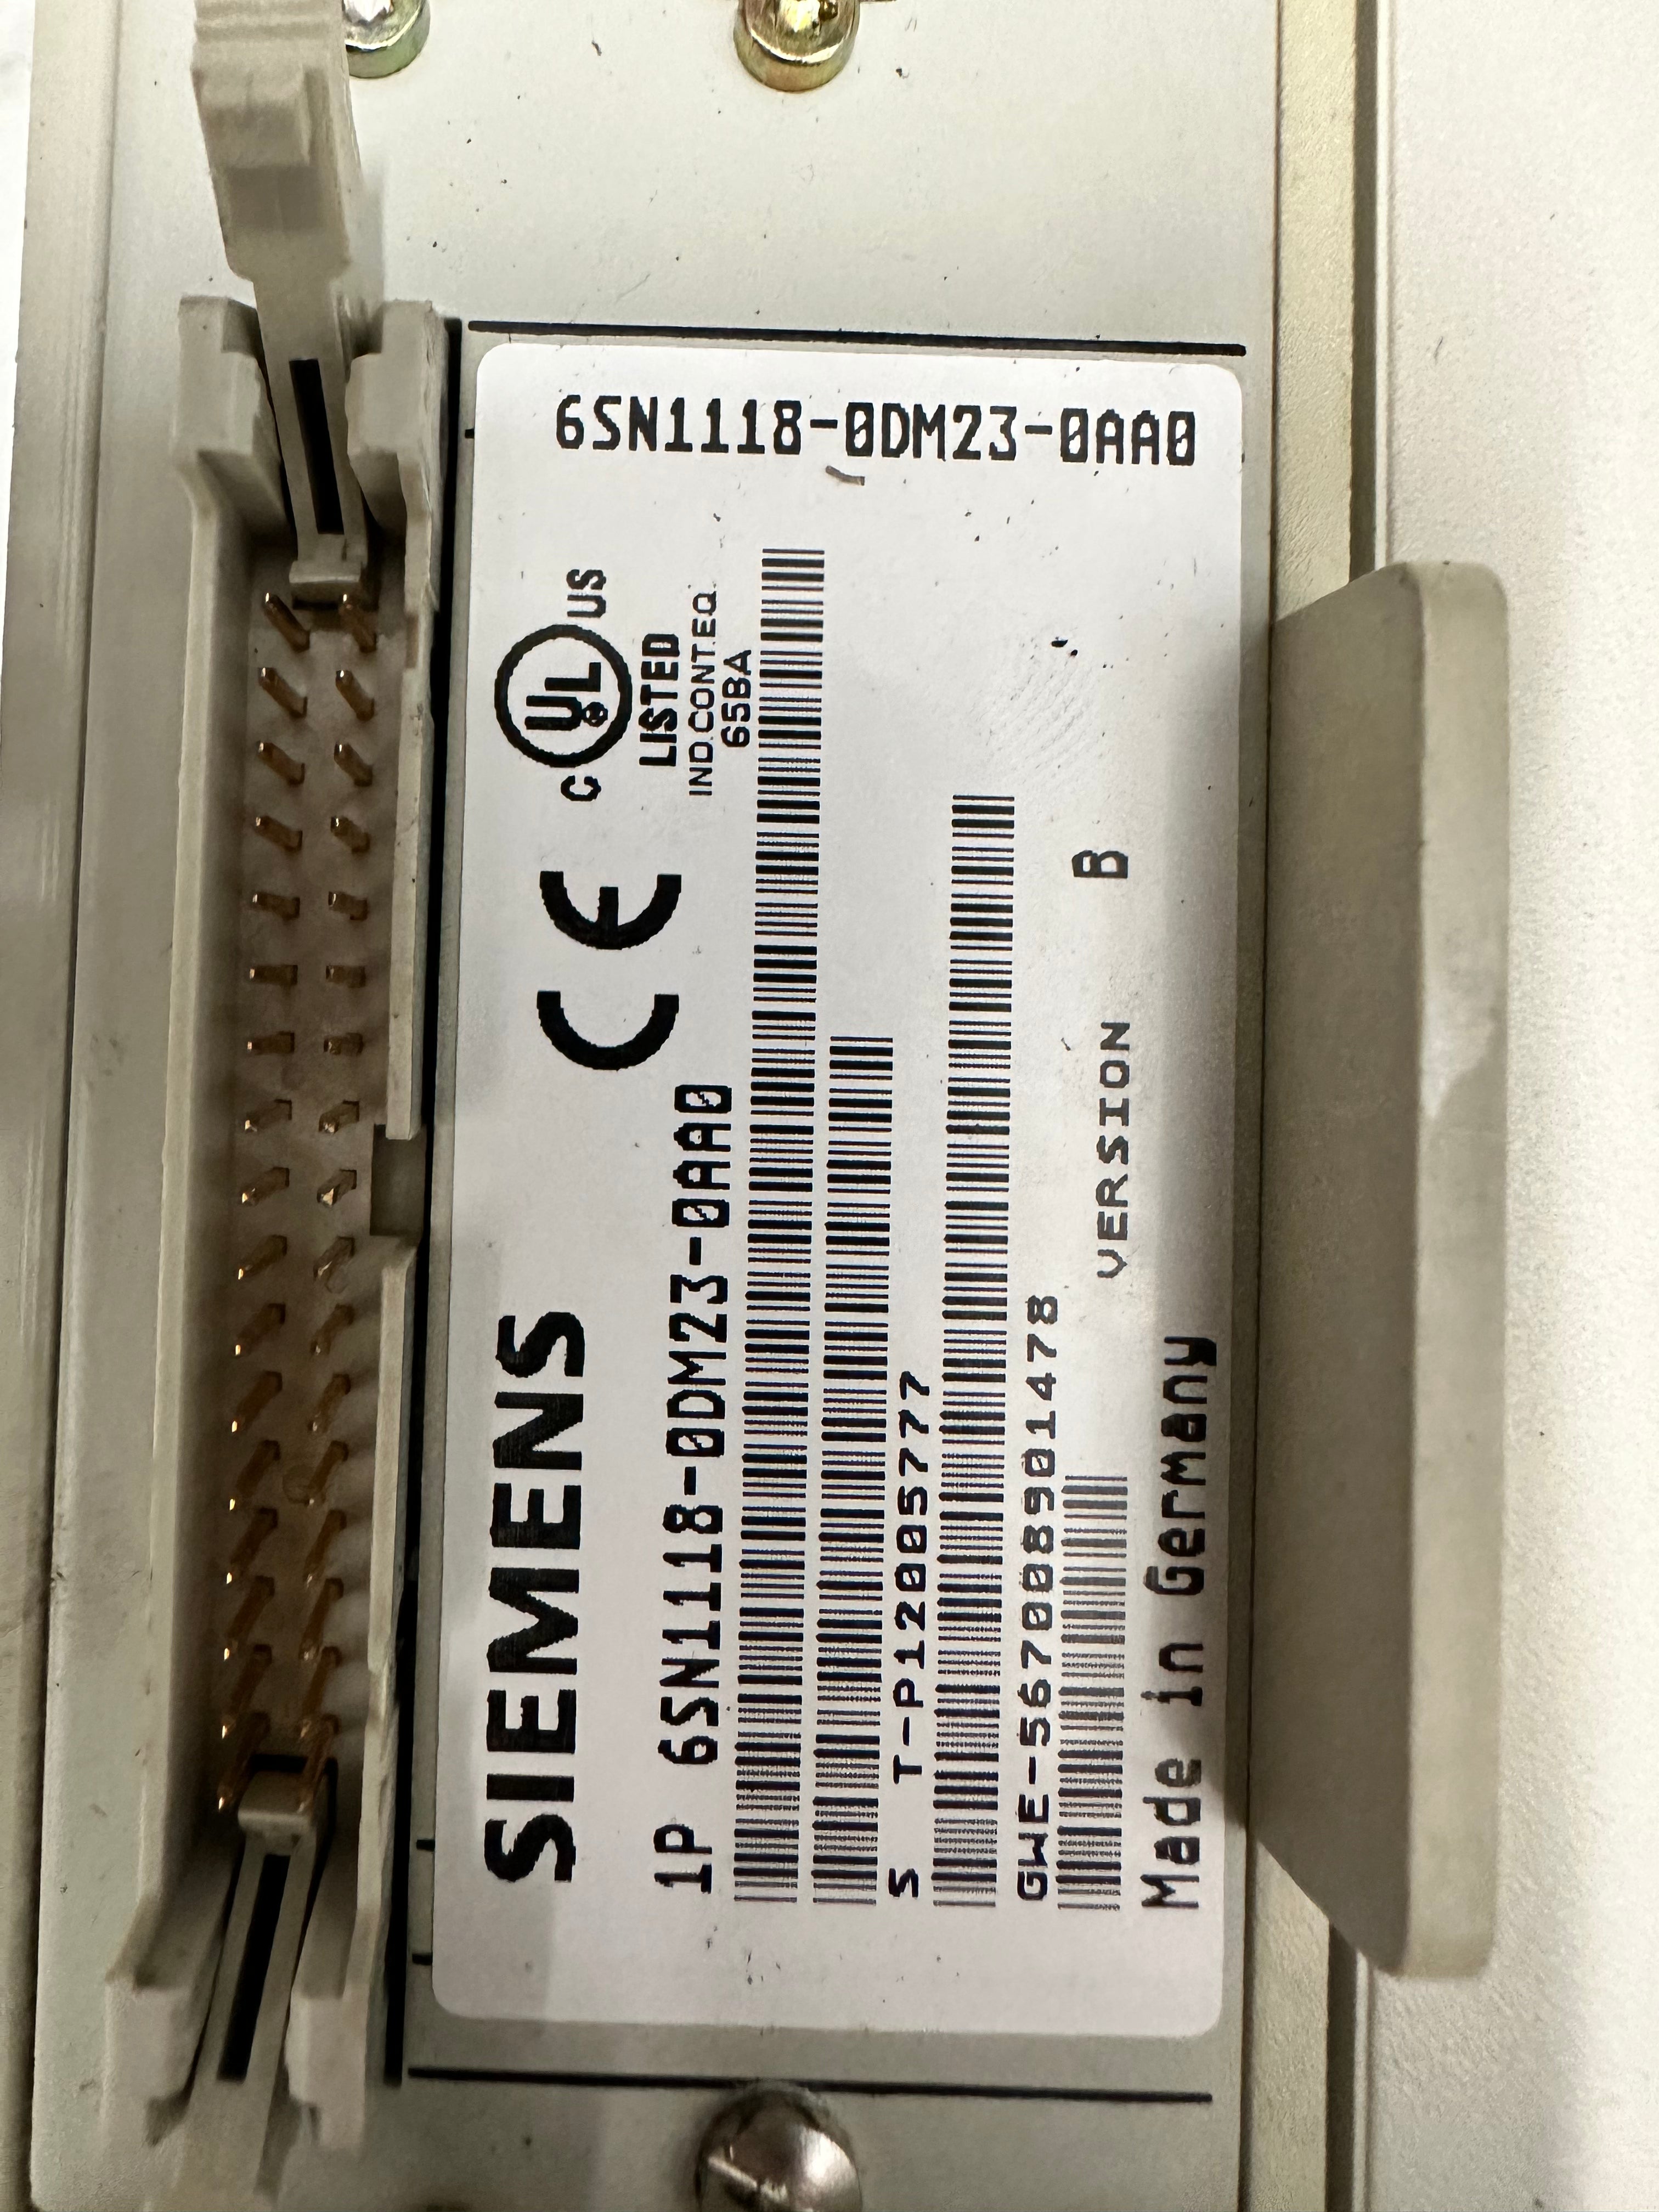 Siemens SIMODRIVE 611 6SN1123-1AA01-0FA1 / 6SN1118-0DM23-0AA